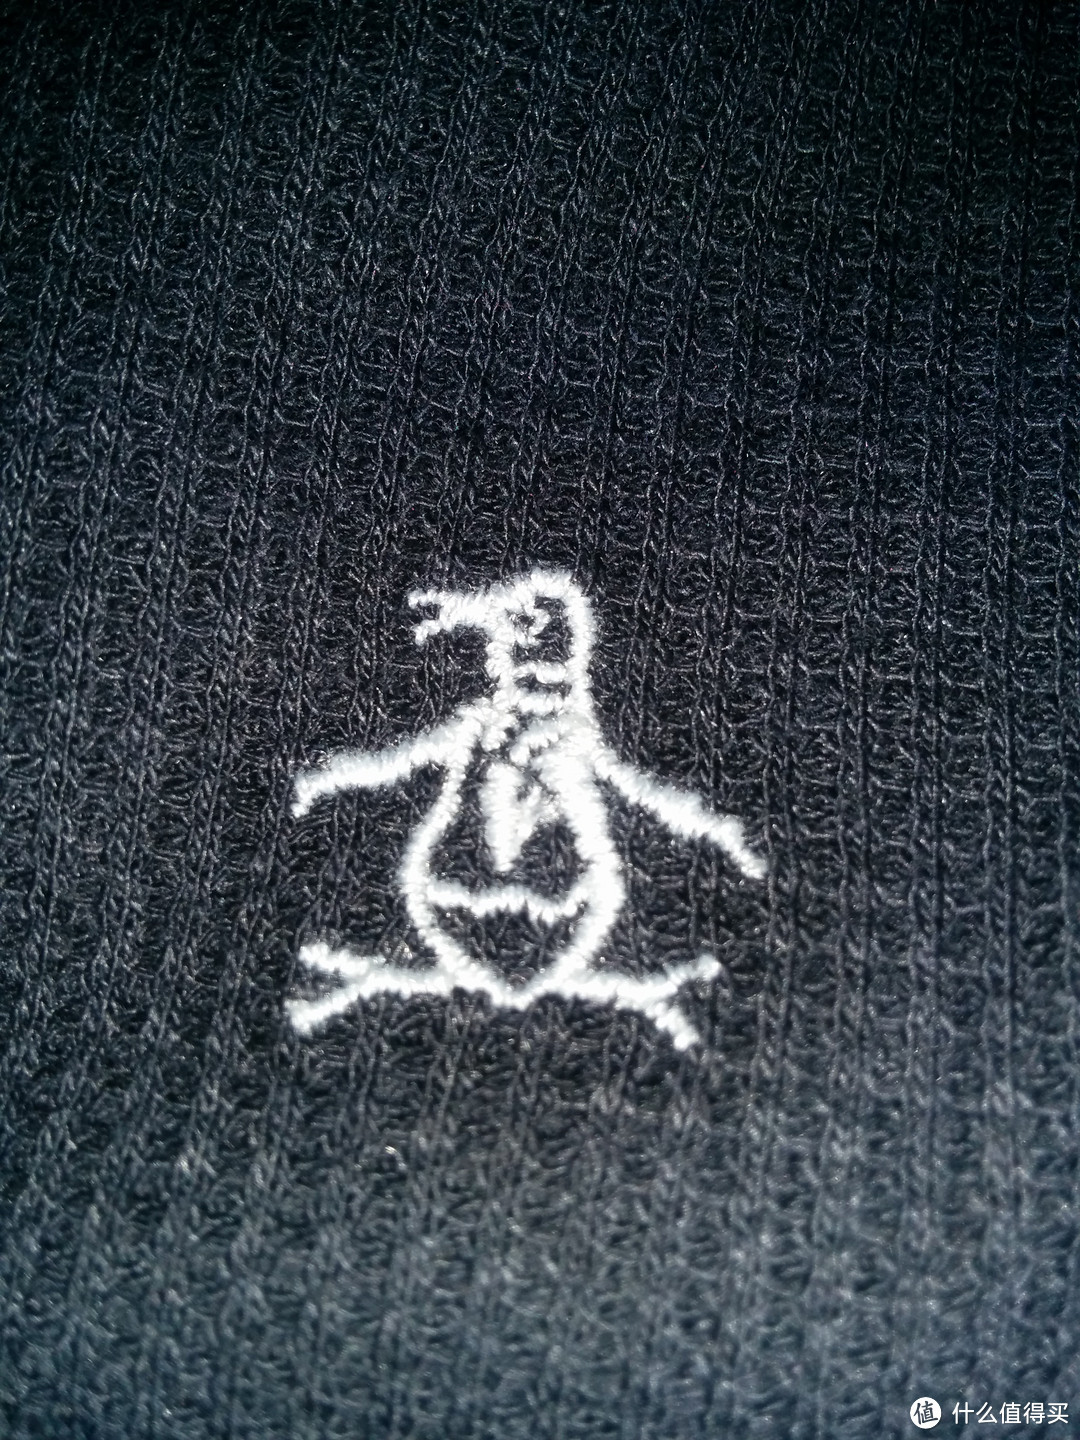 美亚购入Levi's 李维斯 Ace Cargo Twill 男士休闲裤 & Calvin Klein 短袖 & Original Penguin 带帽卫衣及圆领T恤